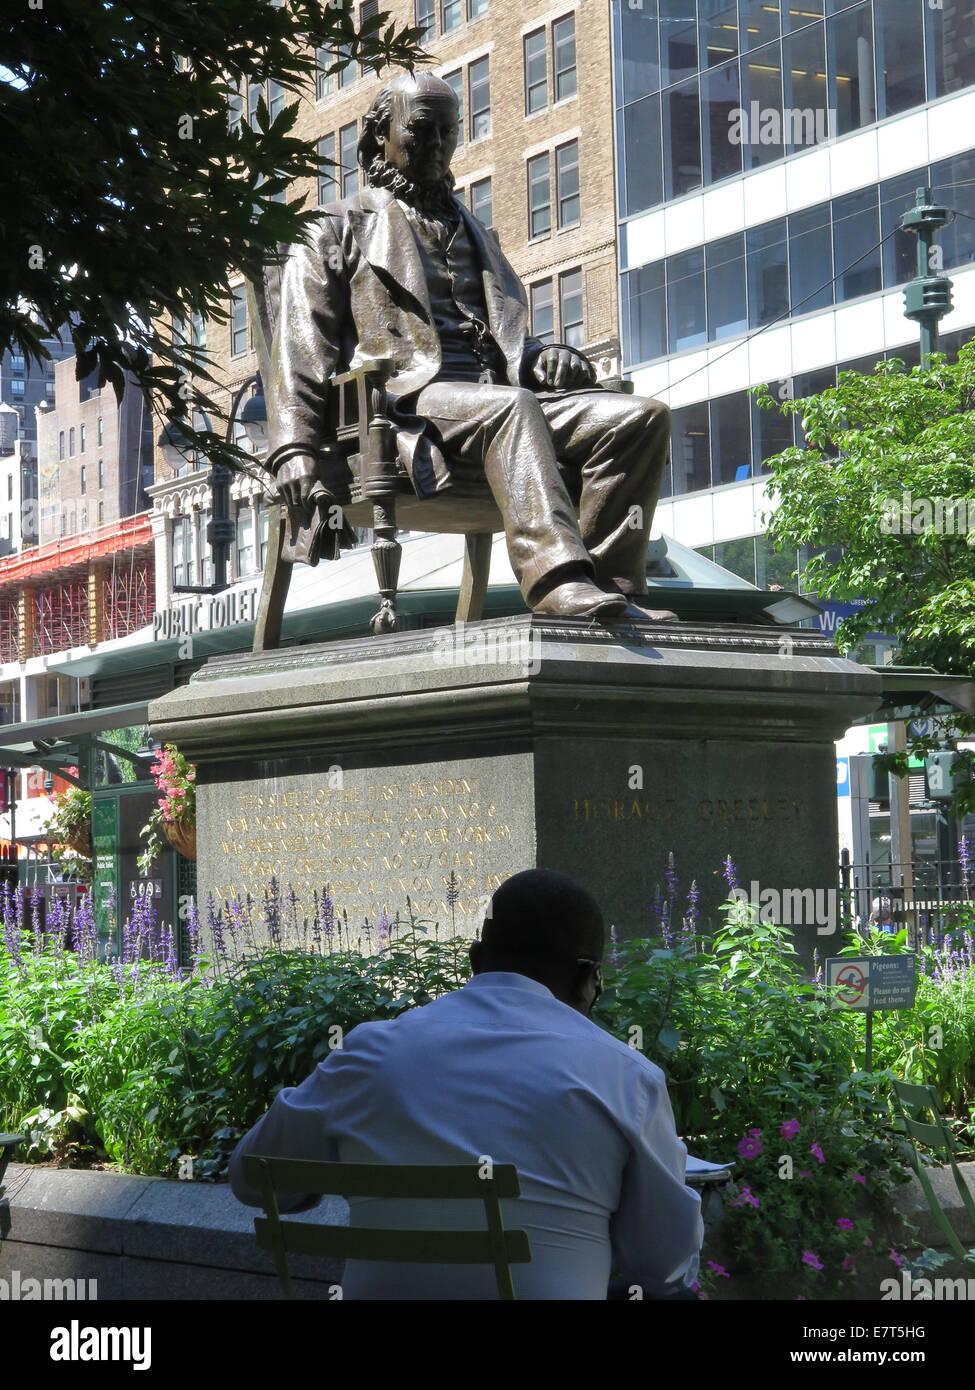 Statua di Horace Greeley su un giorno di estate in Greeley Square, New York City. Tavoli e sedie circondano la statua. Foto Stock